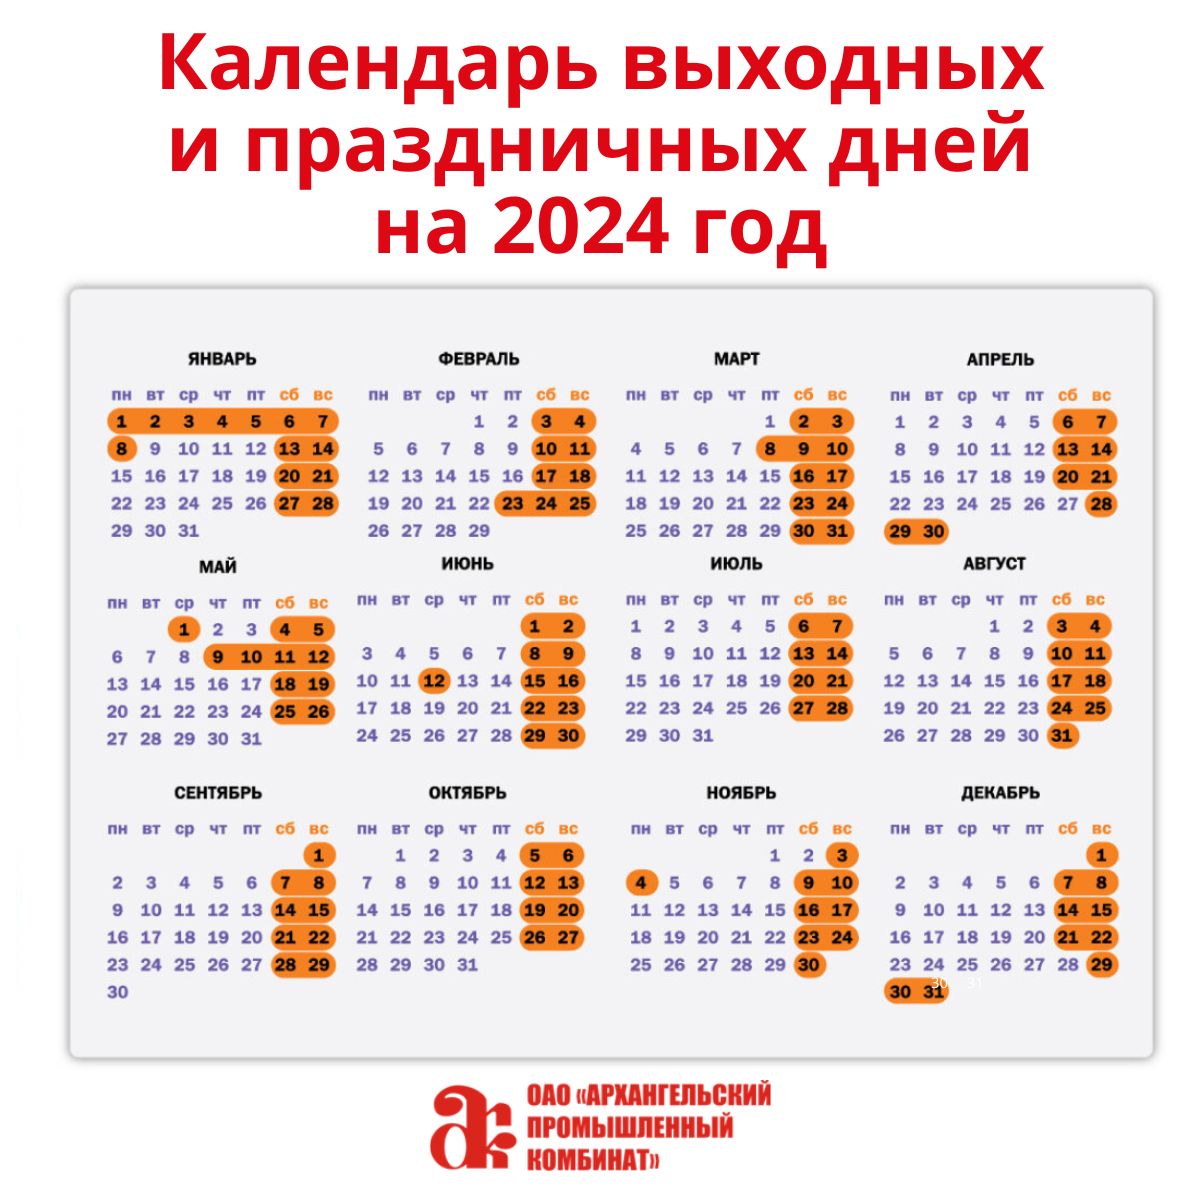 Выходные дни в марте 2024 выборы президента. Производственный календарь. Производственный Калень. Календарь праздников.